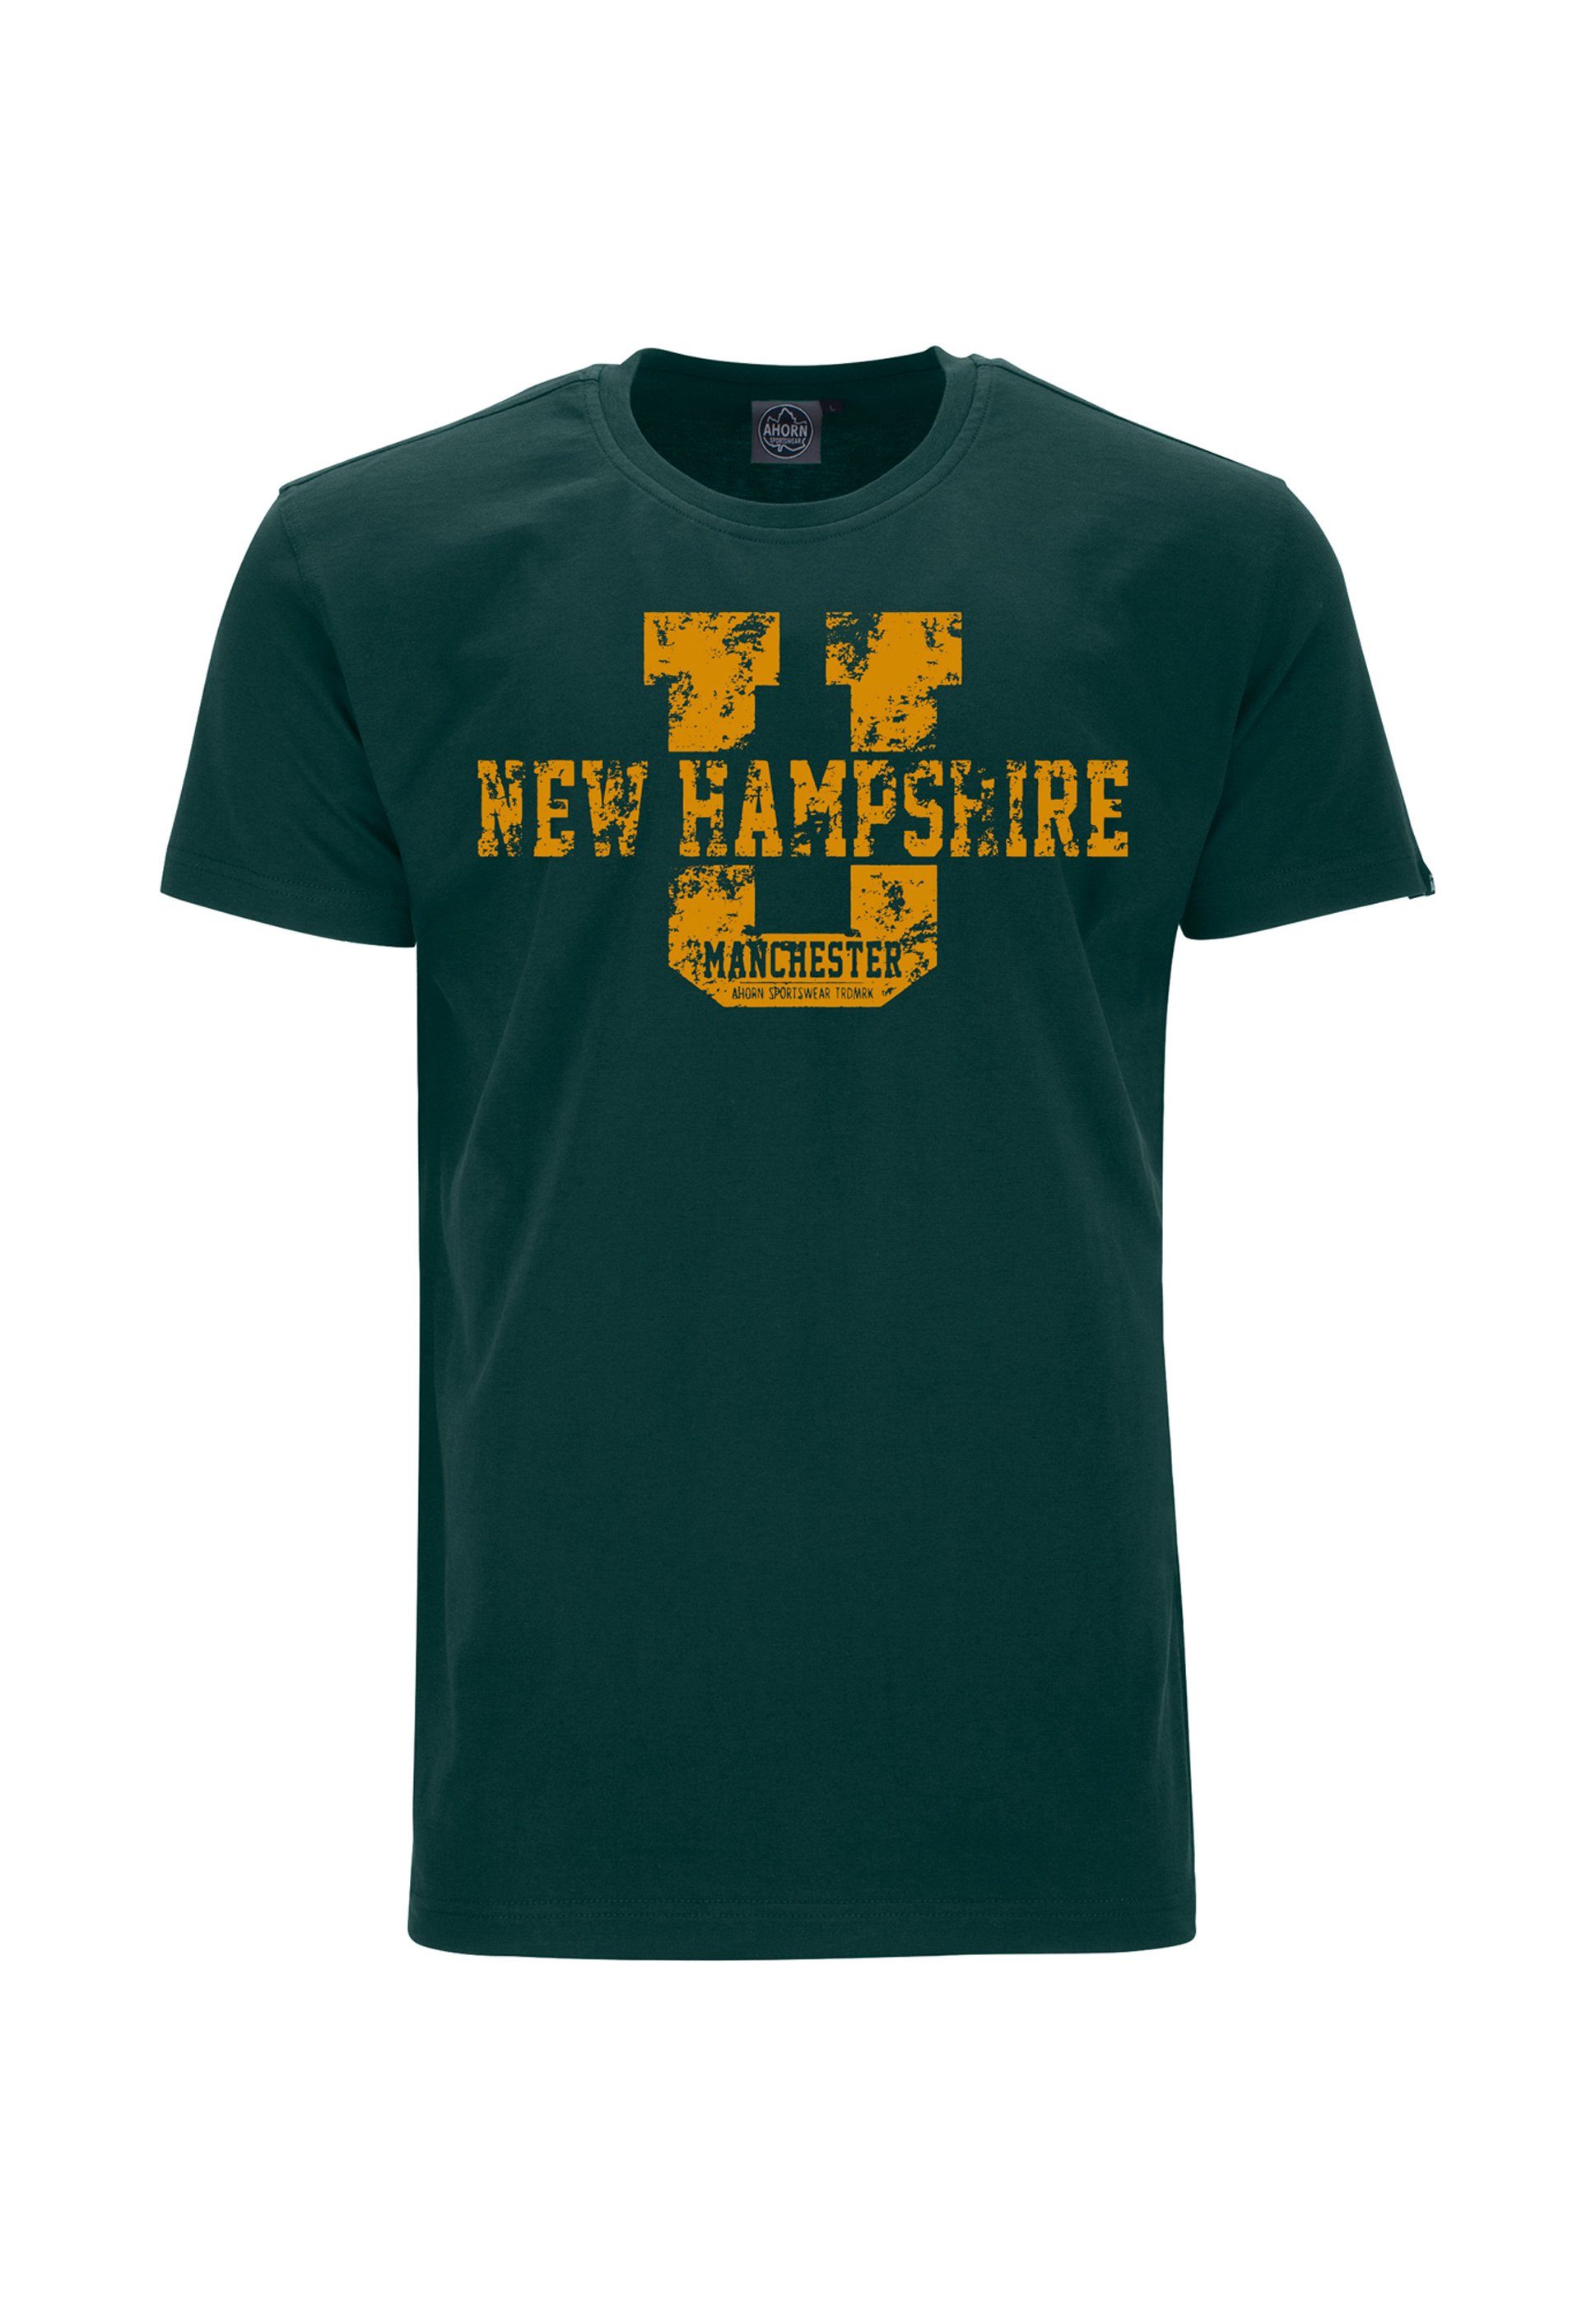 AHORN SPORTSWEAR T-Shirt NEW HAMPSHIRE mit sportlichem Front-Motiv dunkelgrün